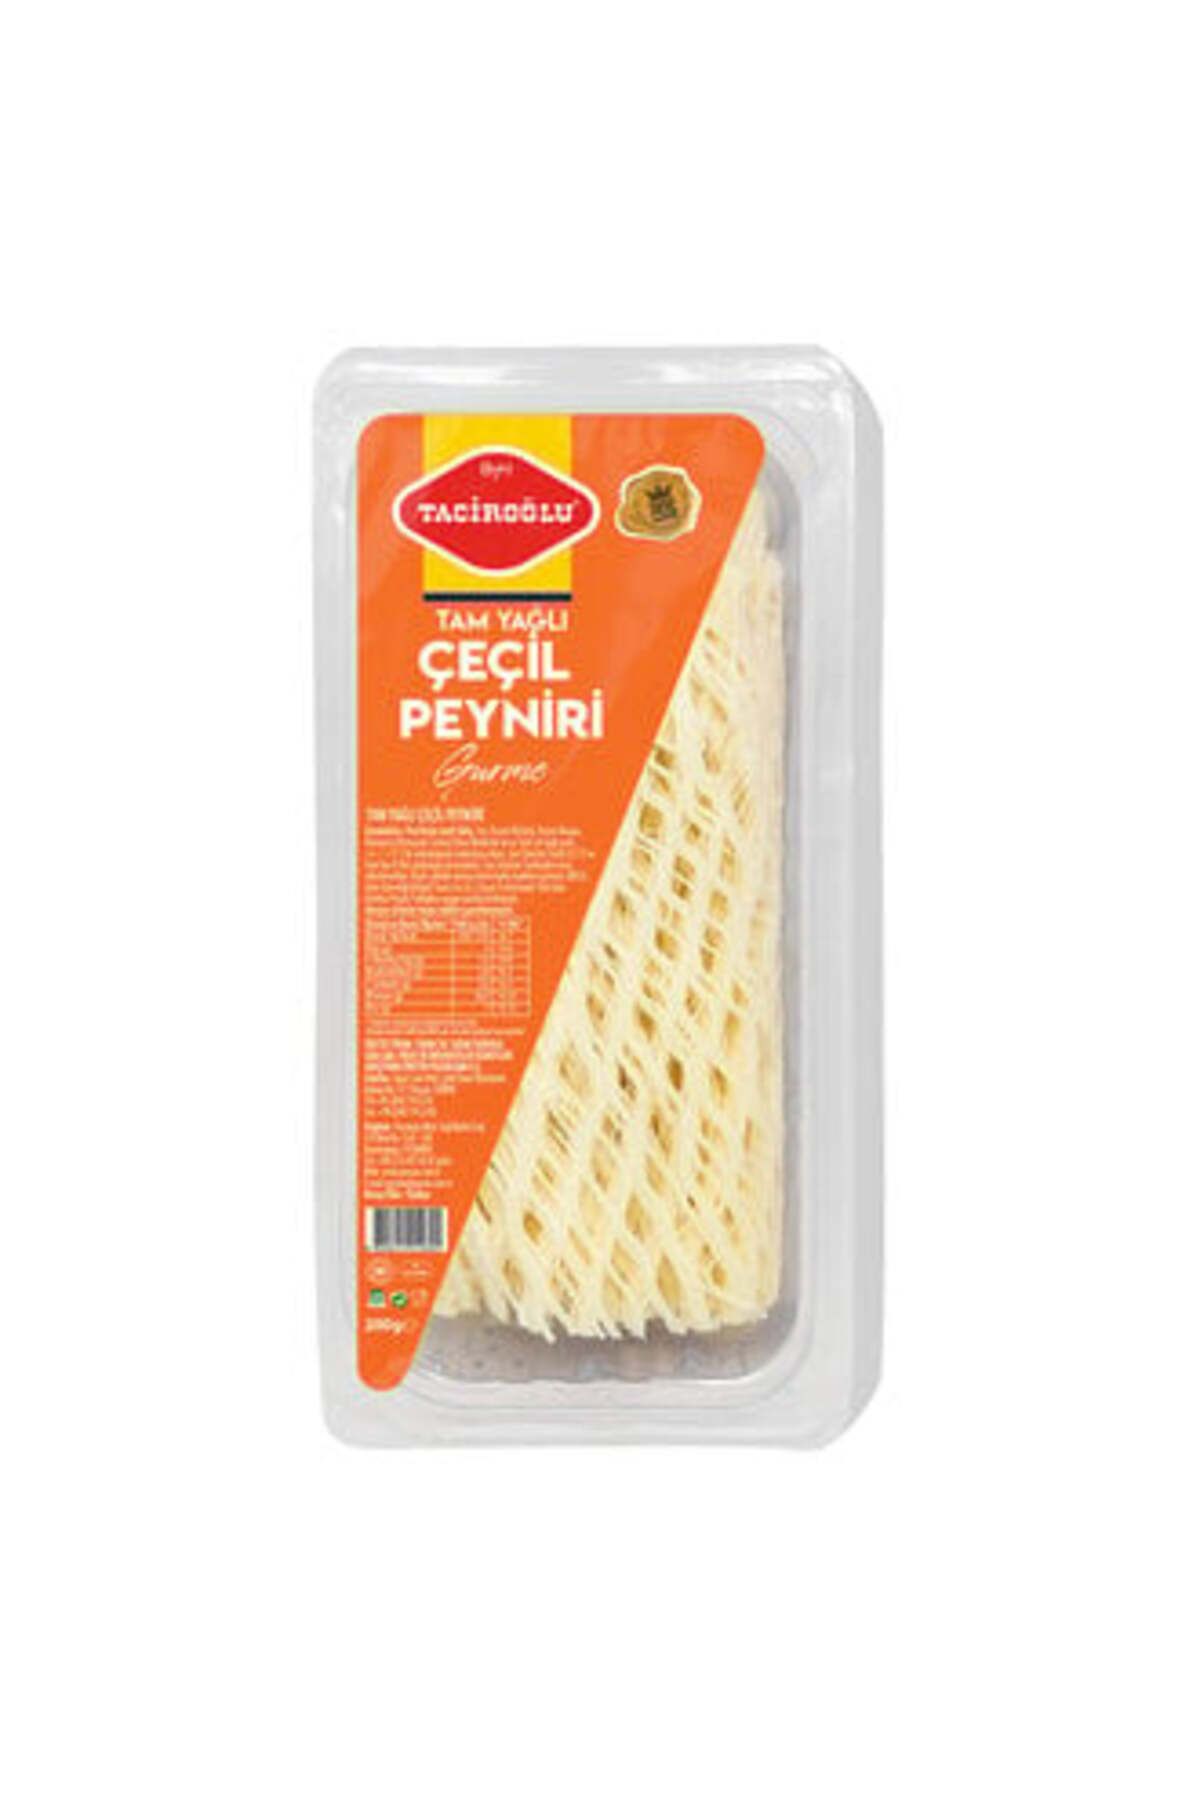 Taciroğlu ( ETİ PETİTO HEDİYE ) Taciroğlu Tam Yağlı Çeçil Peyniri 200 Gr ( 2 ADET )